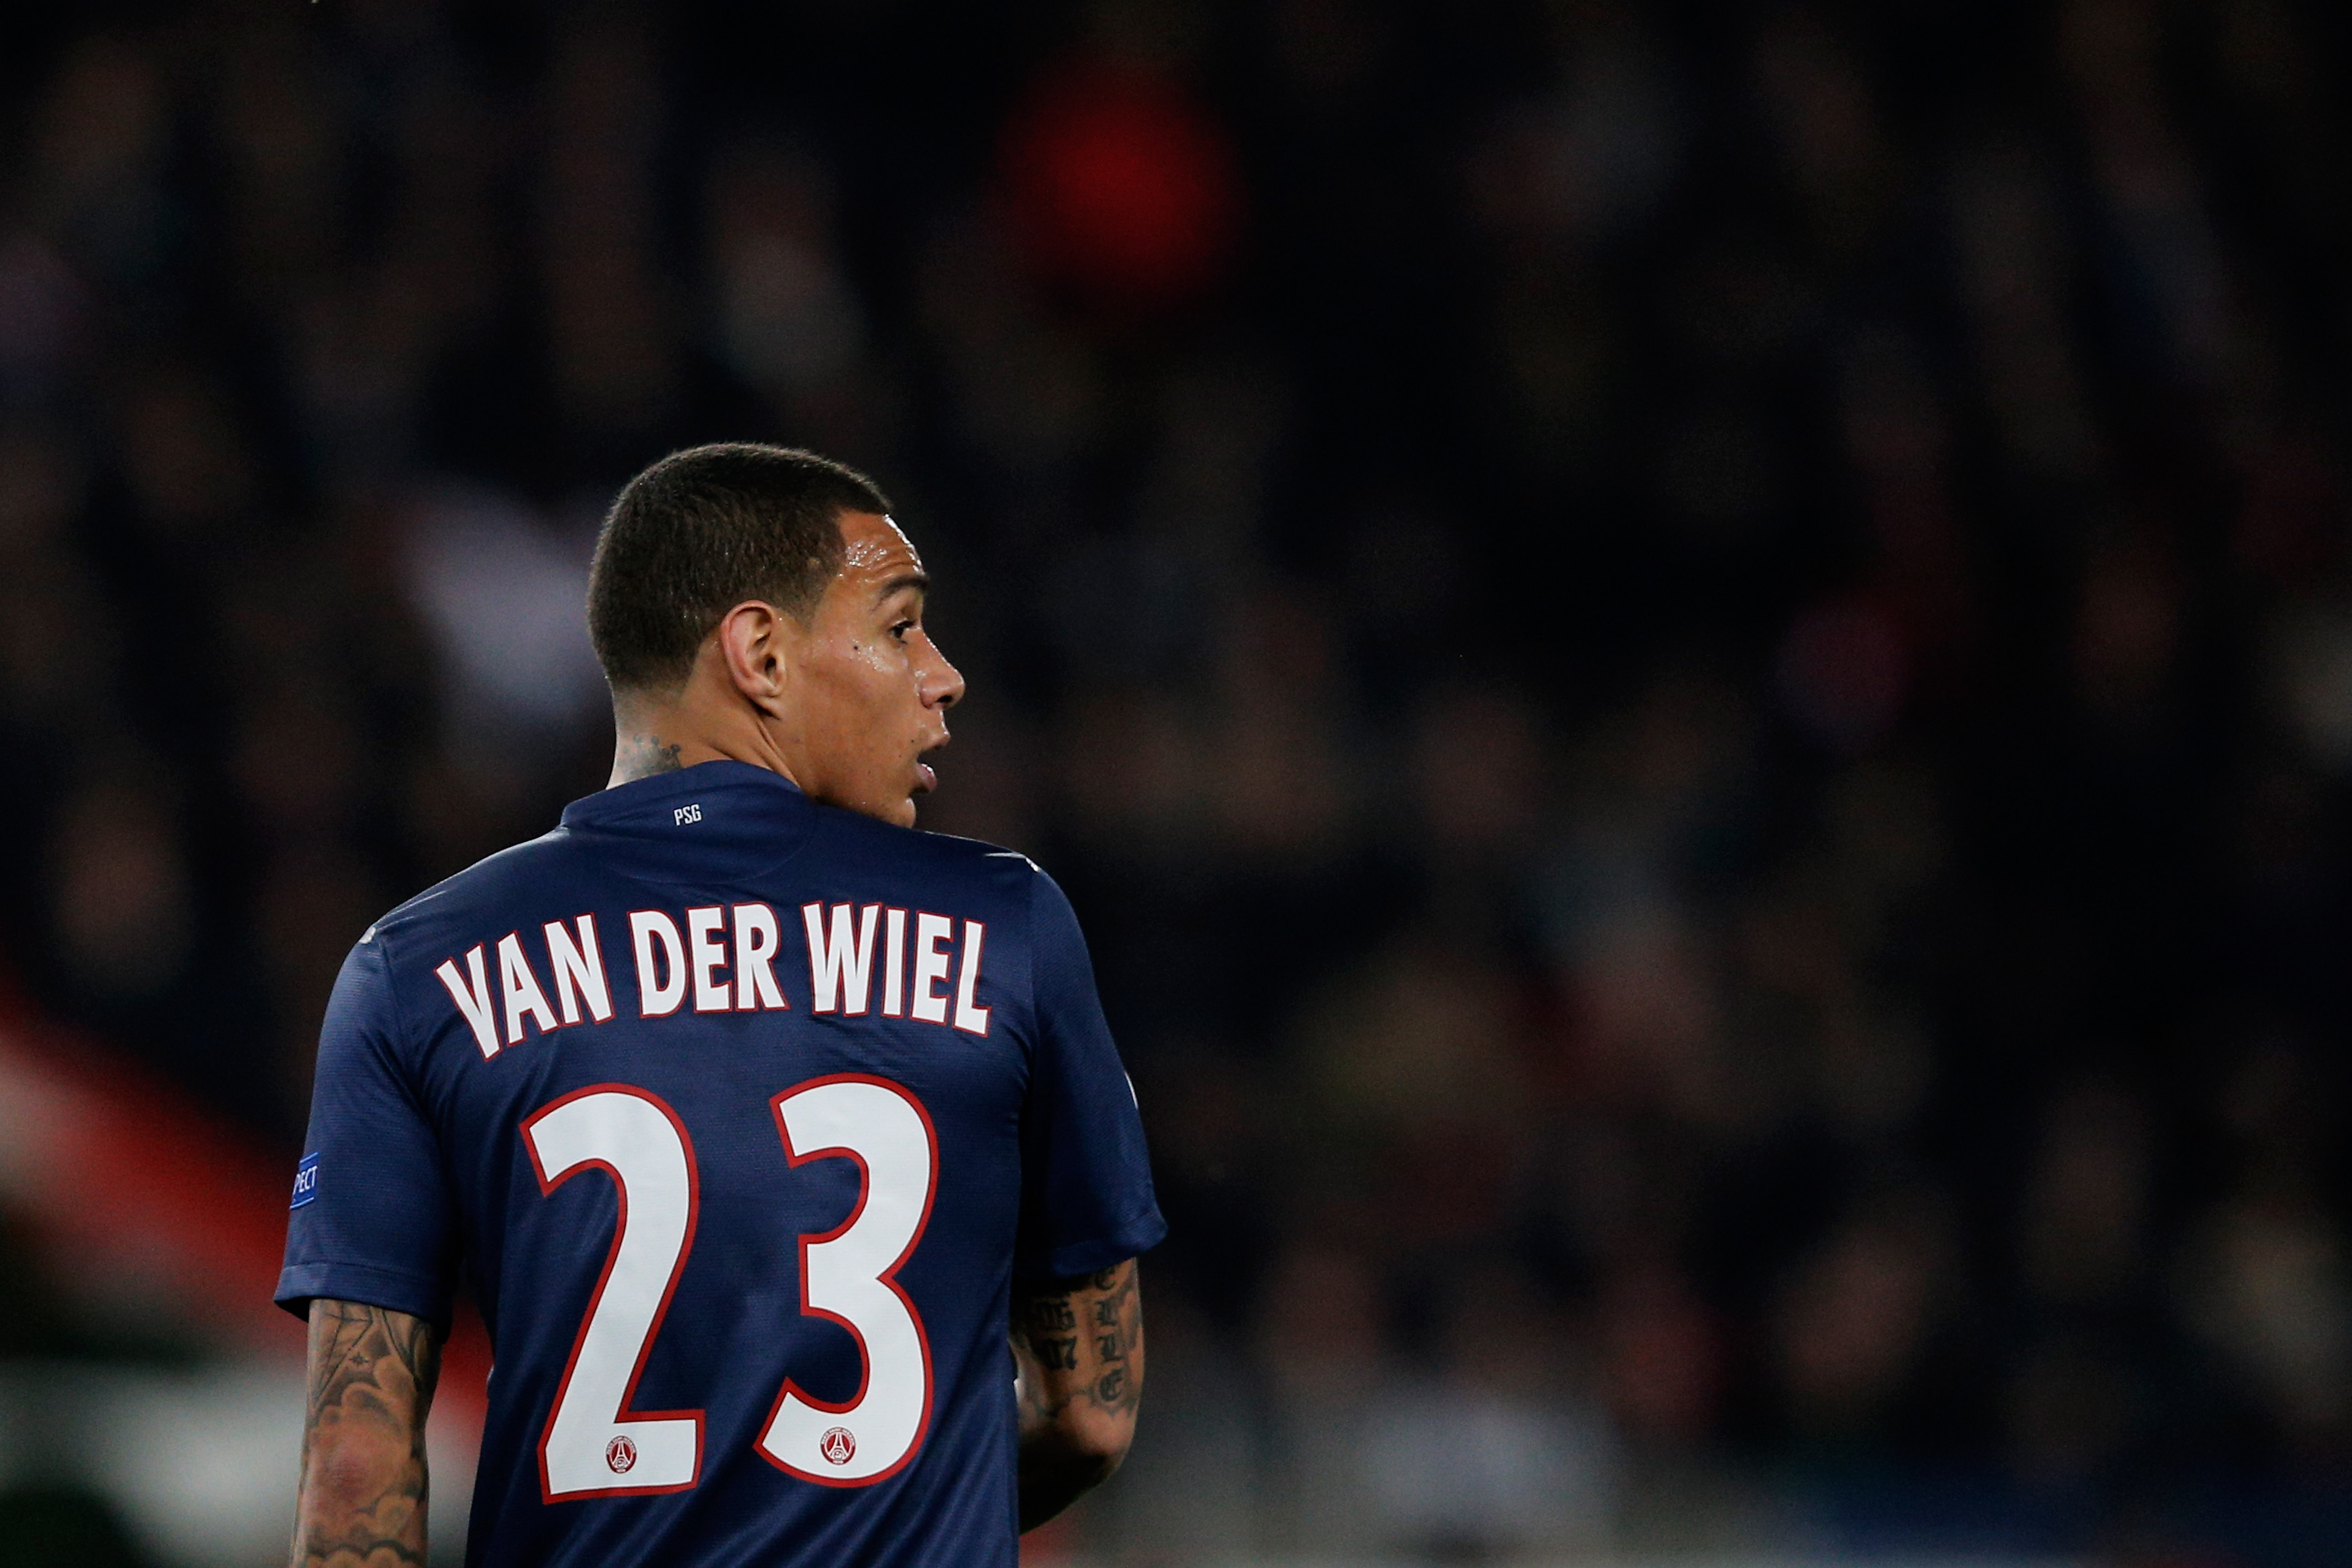 PSG complete Van der Wiel deal